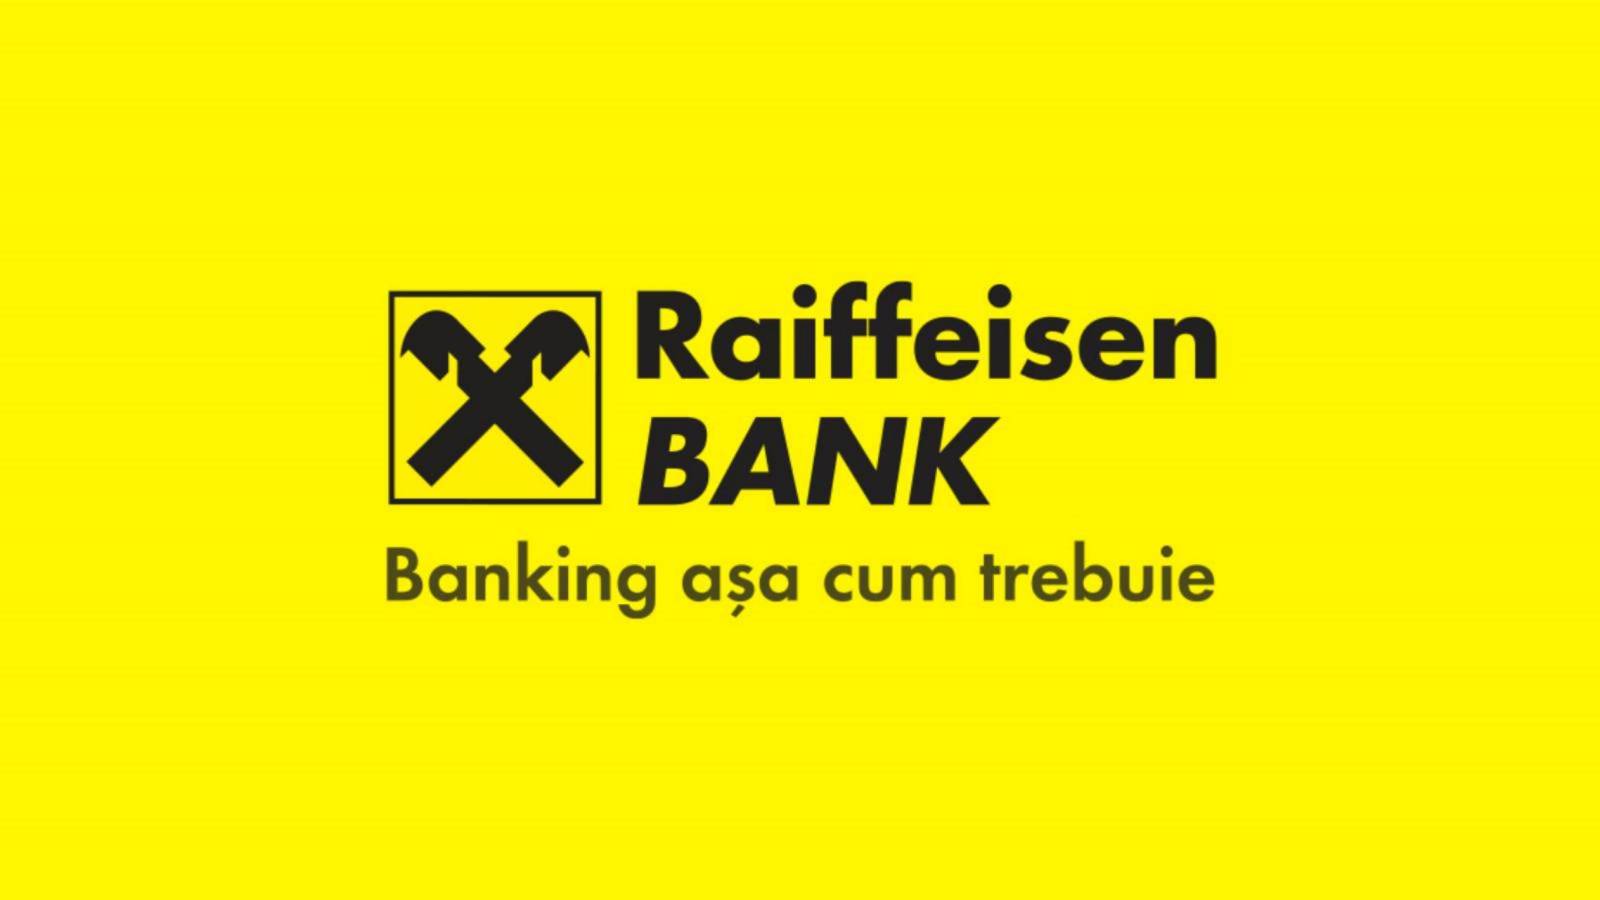 Raiffeisen Bank VIKTIGT gynnar ALLA rumänska kunder